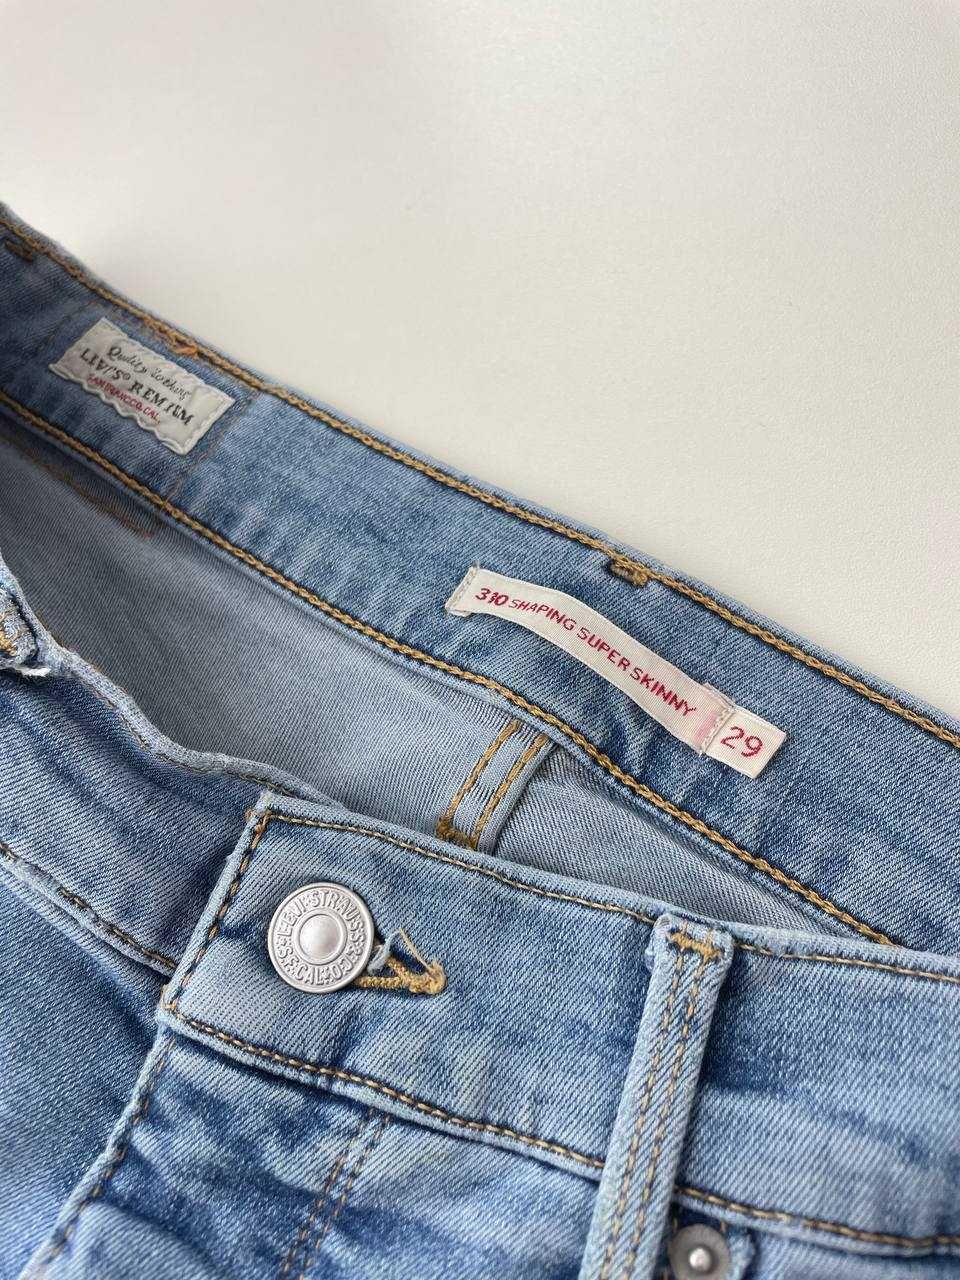 29/М Джинси Levi’s Premium 310 shaping super skinny джинсы оригинал